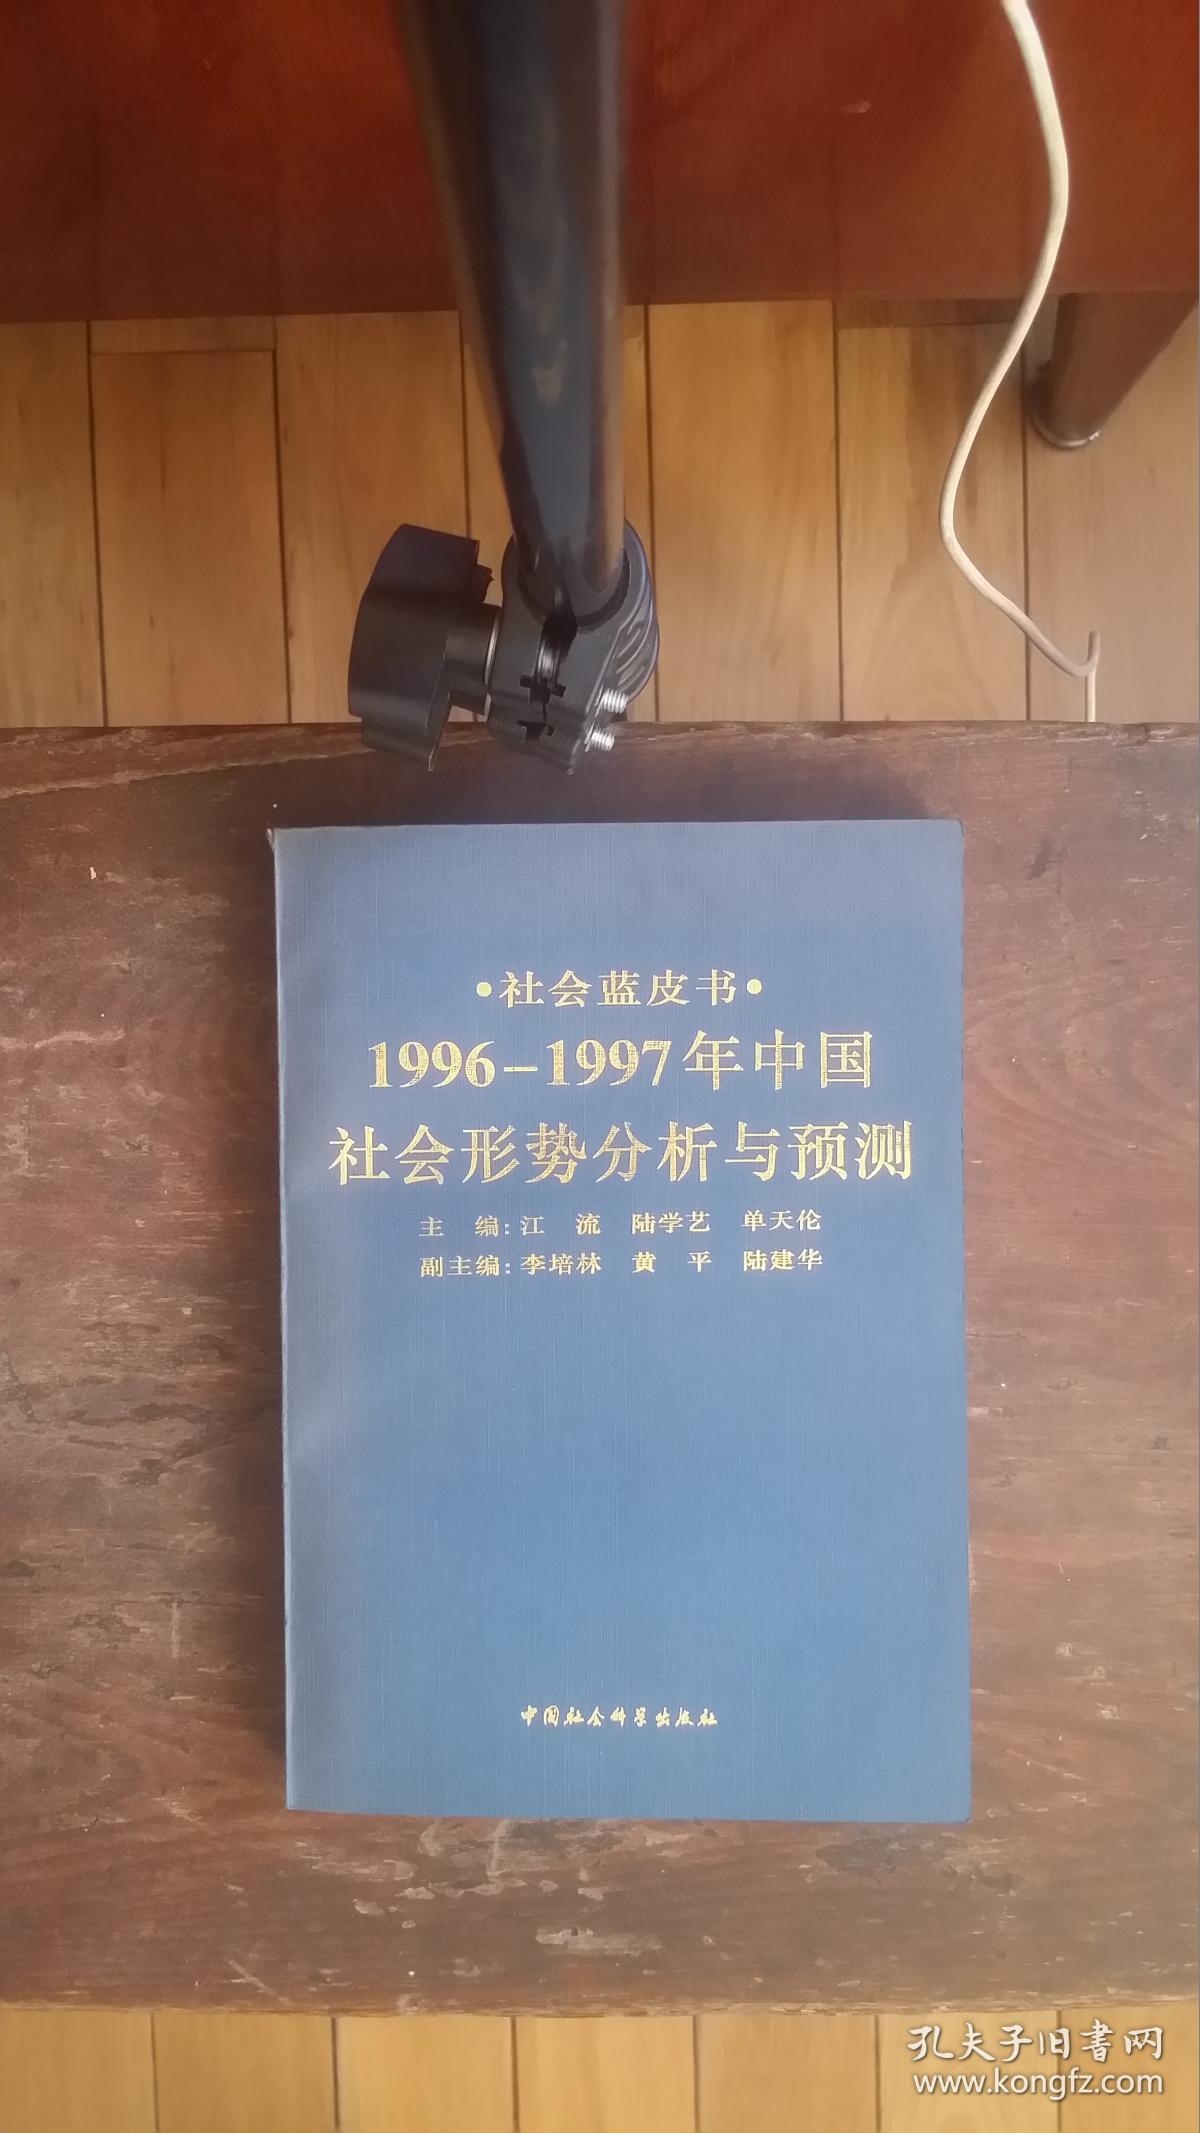 1996年1997年中国社会形势分析与预测社会蓝皮书